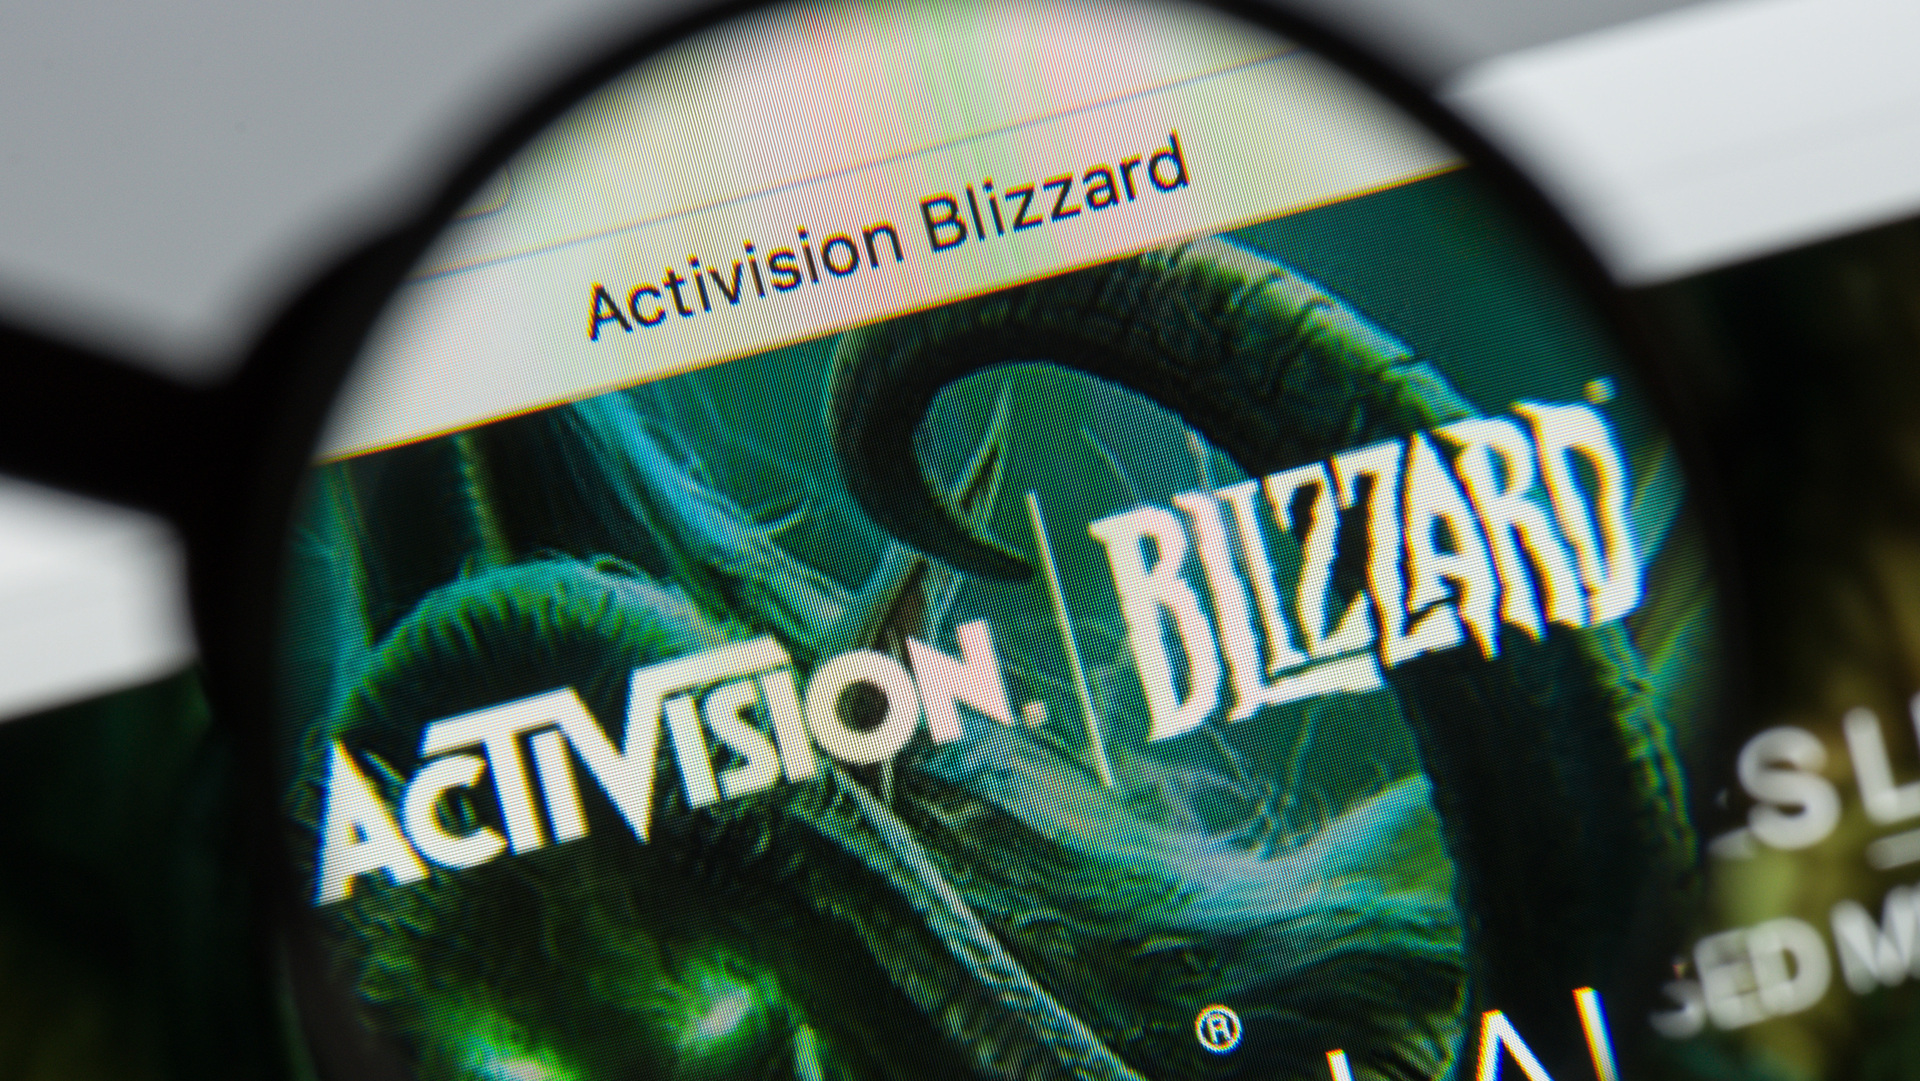 ענקית הגיימינג אקטיוויז'ן-בליזארד Activision Blizzard